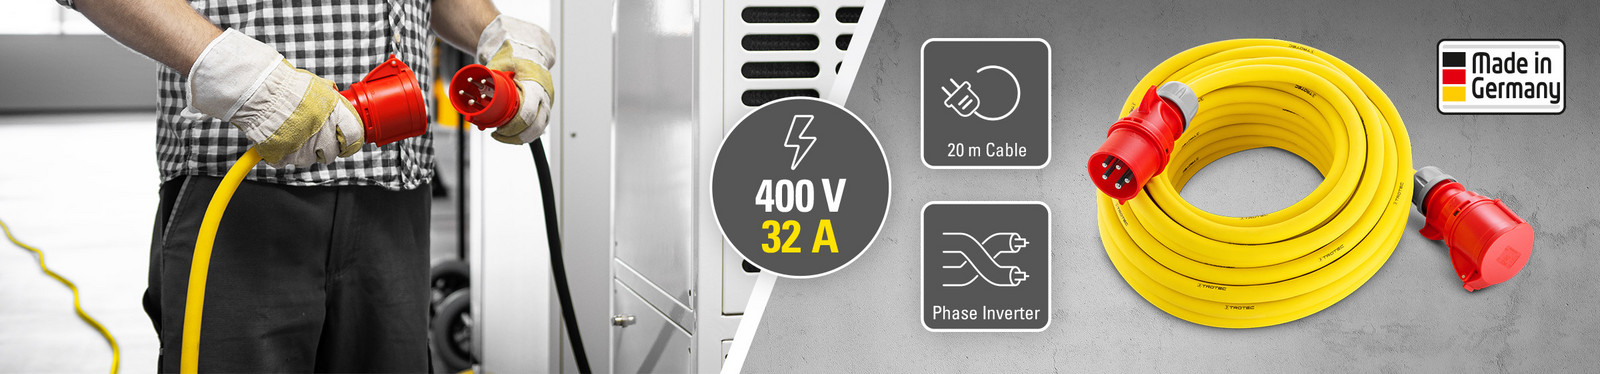 Professionelle forlængerledninger 400 V (32 A) – Made in Germany